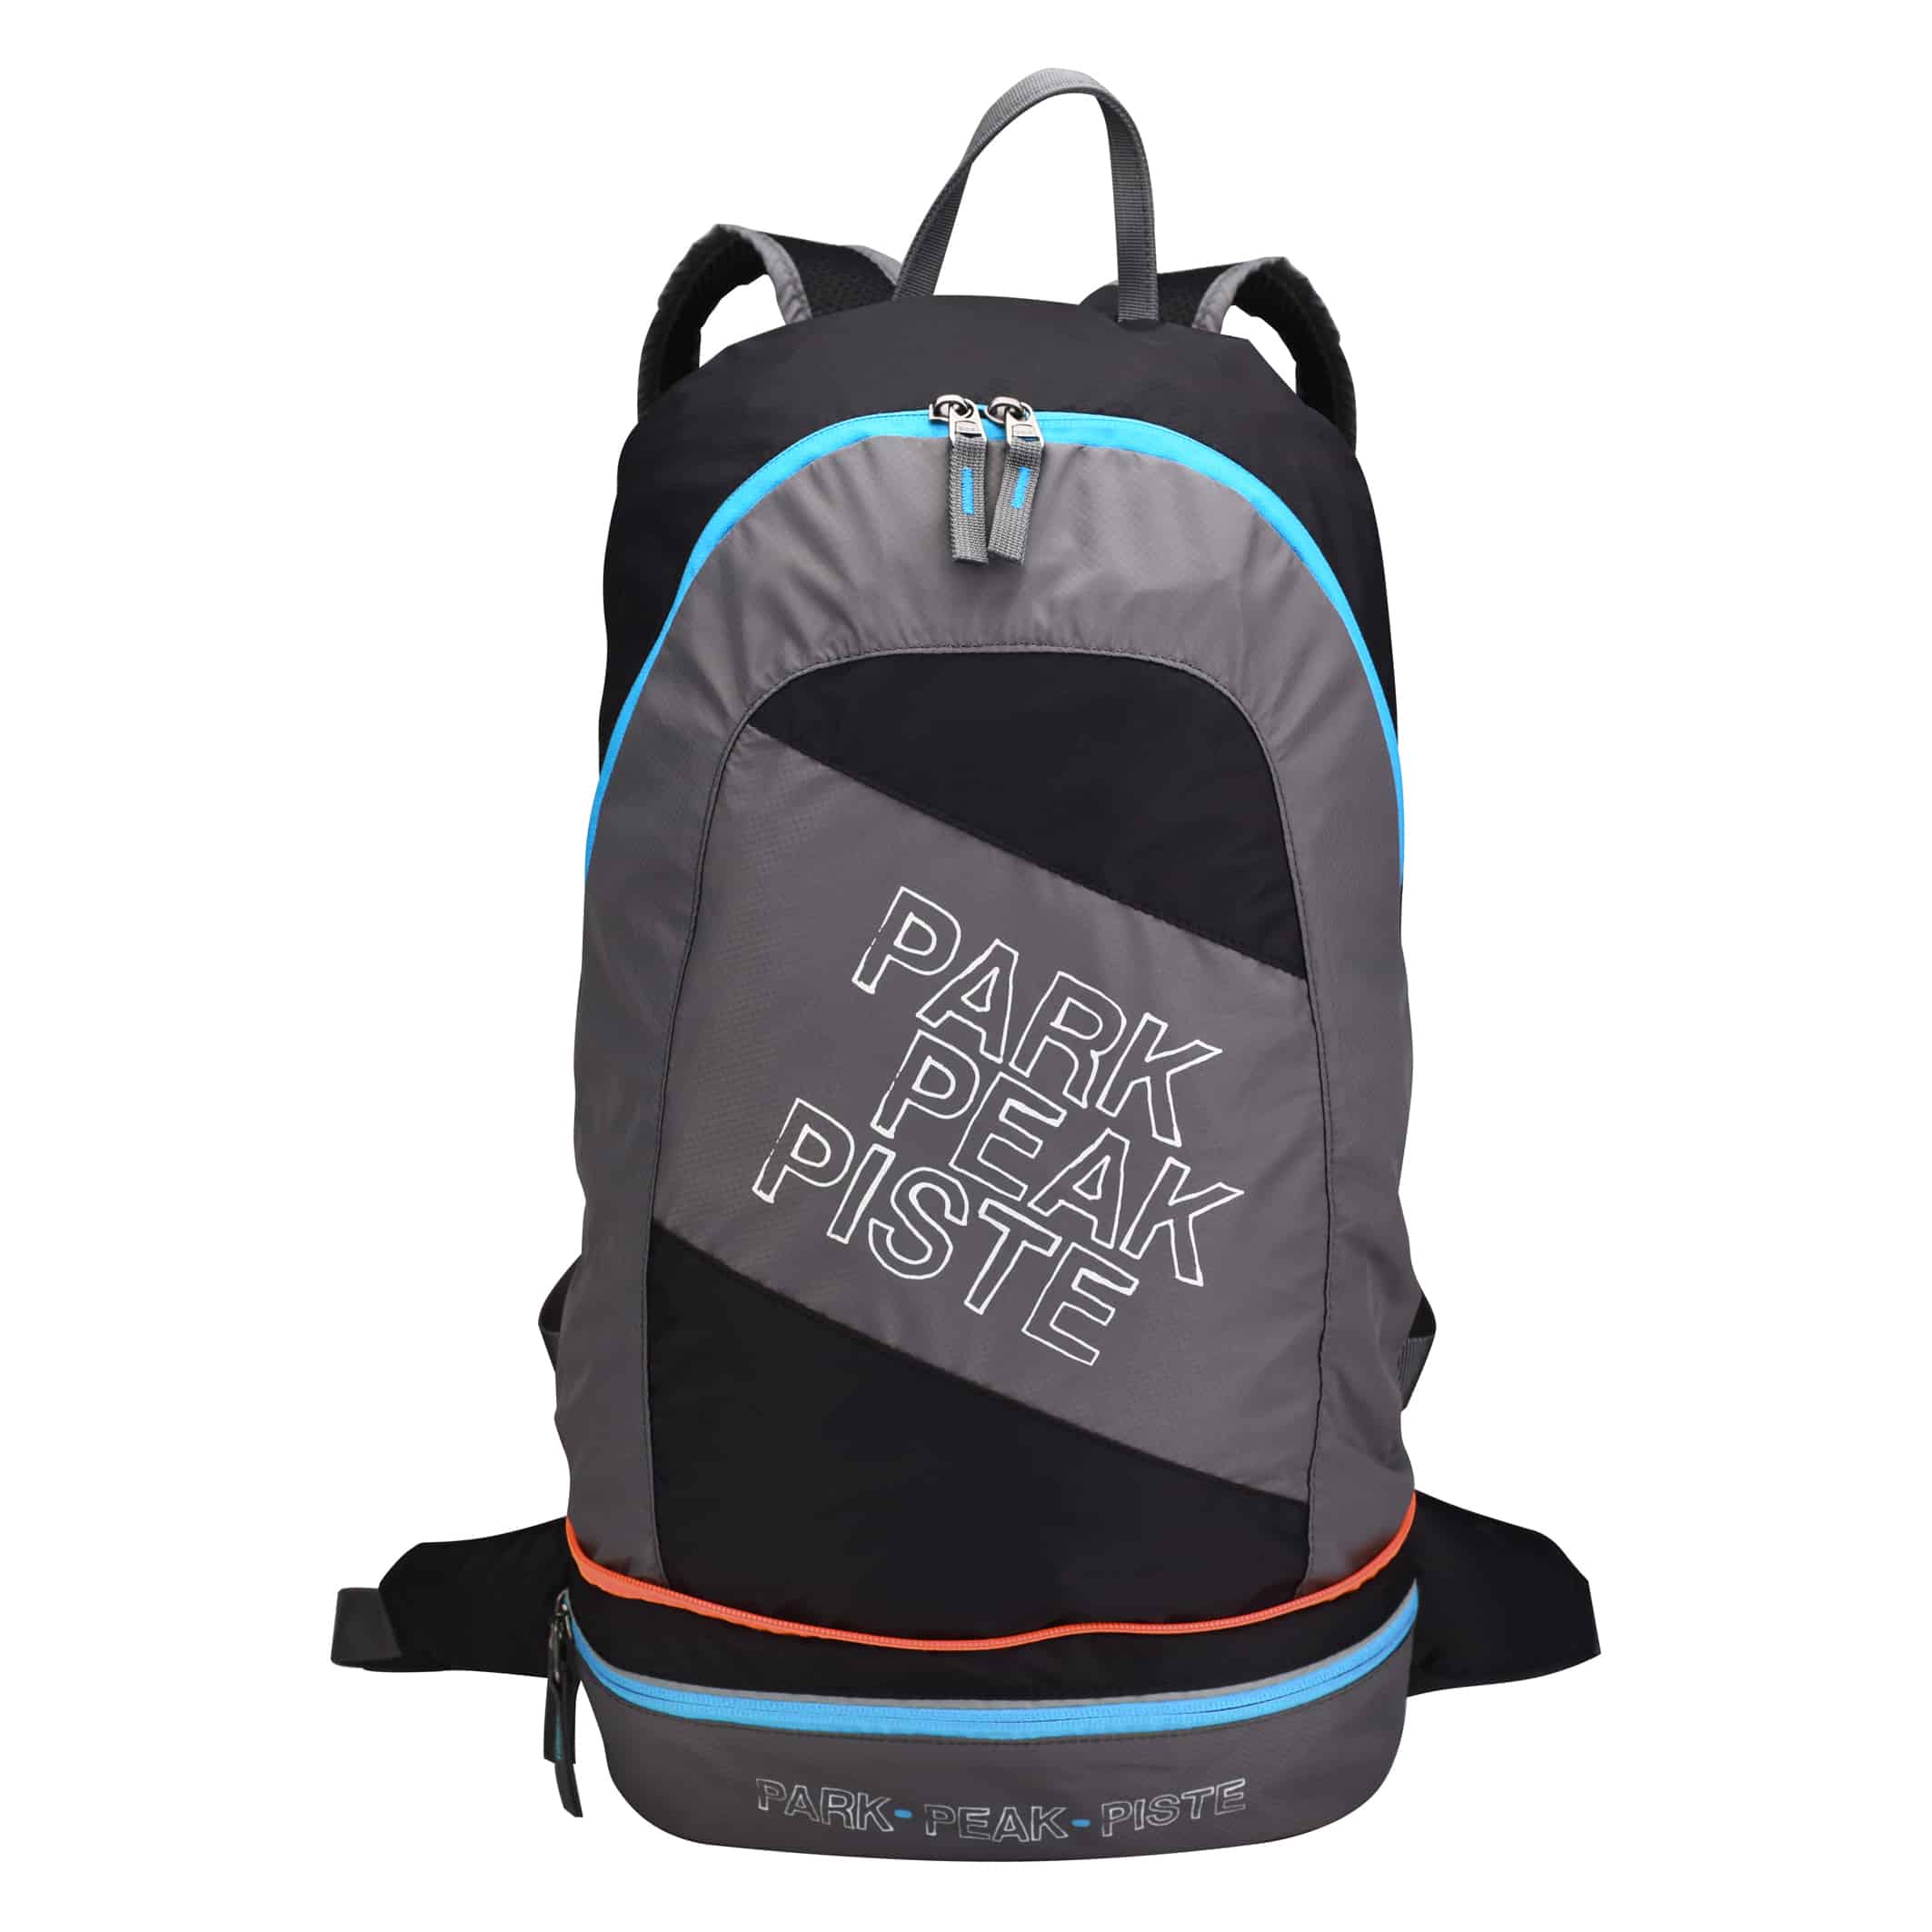 MB550-03-Backpack-2-in-1-Rock-Blue-Orange-Open